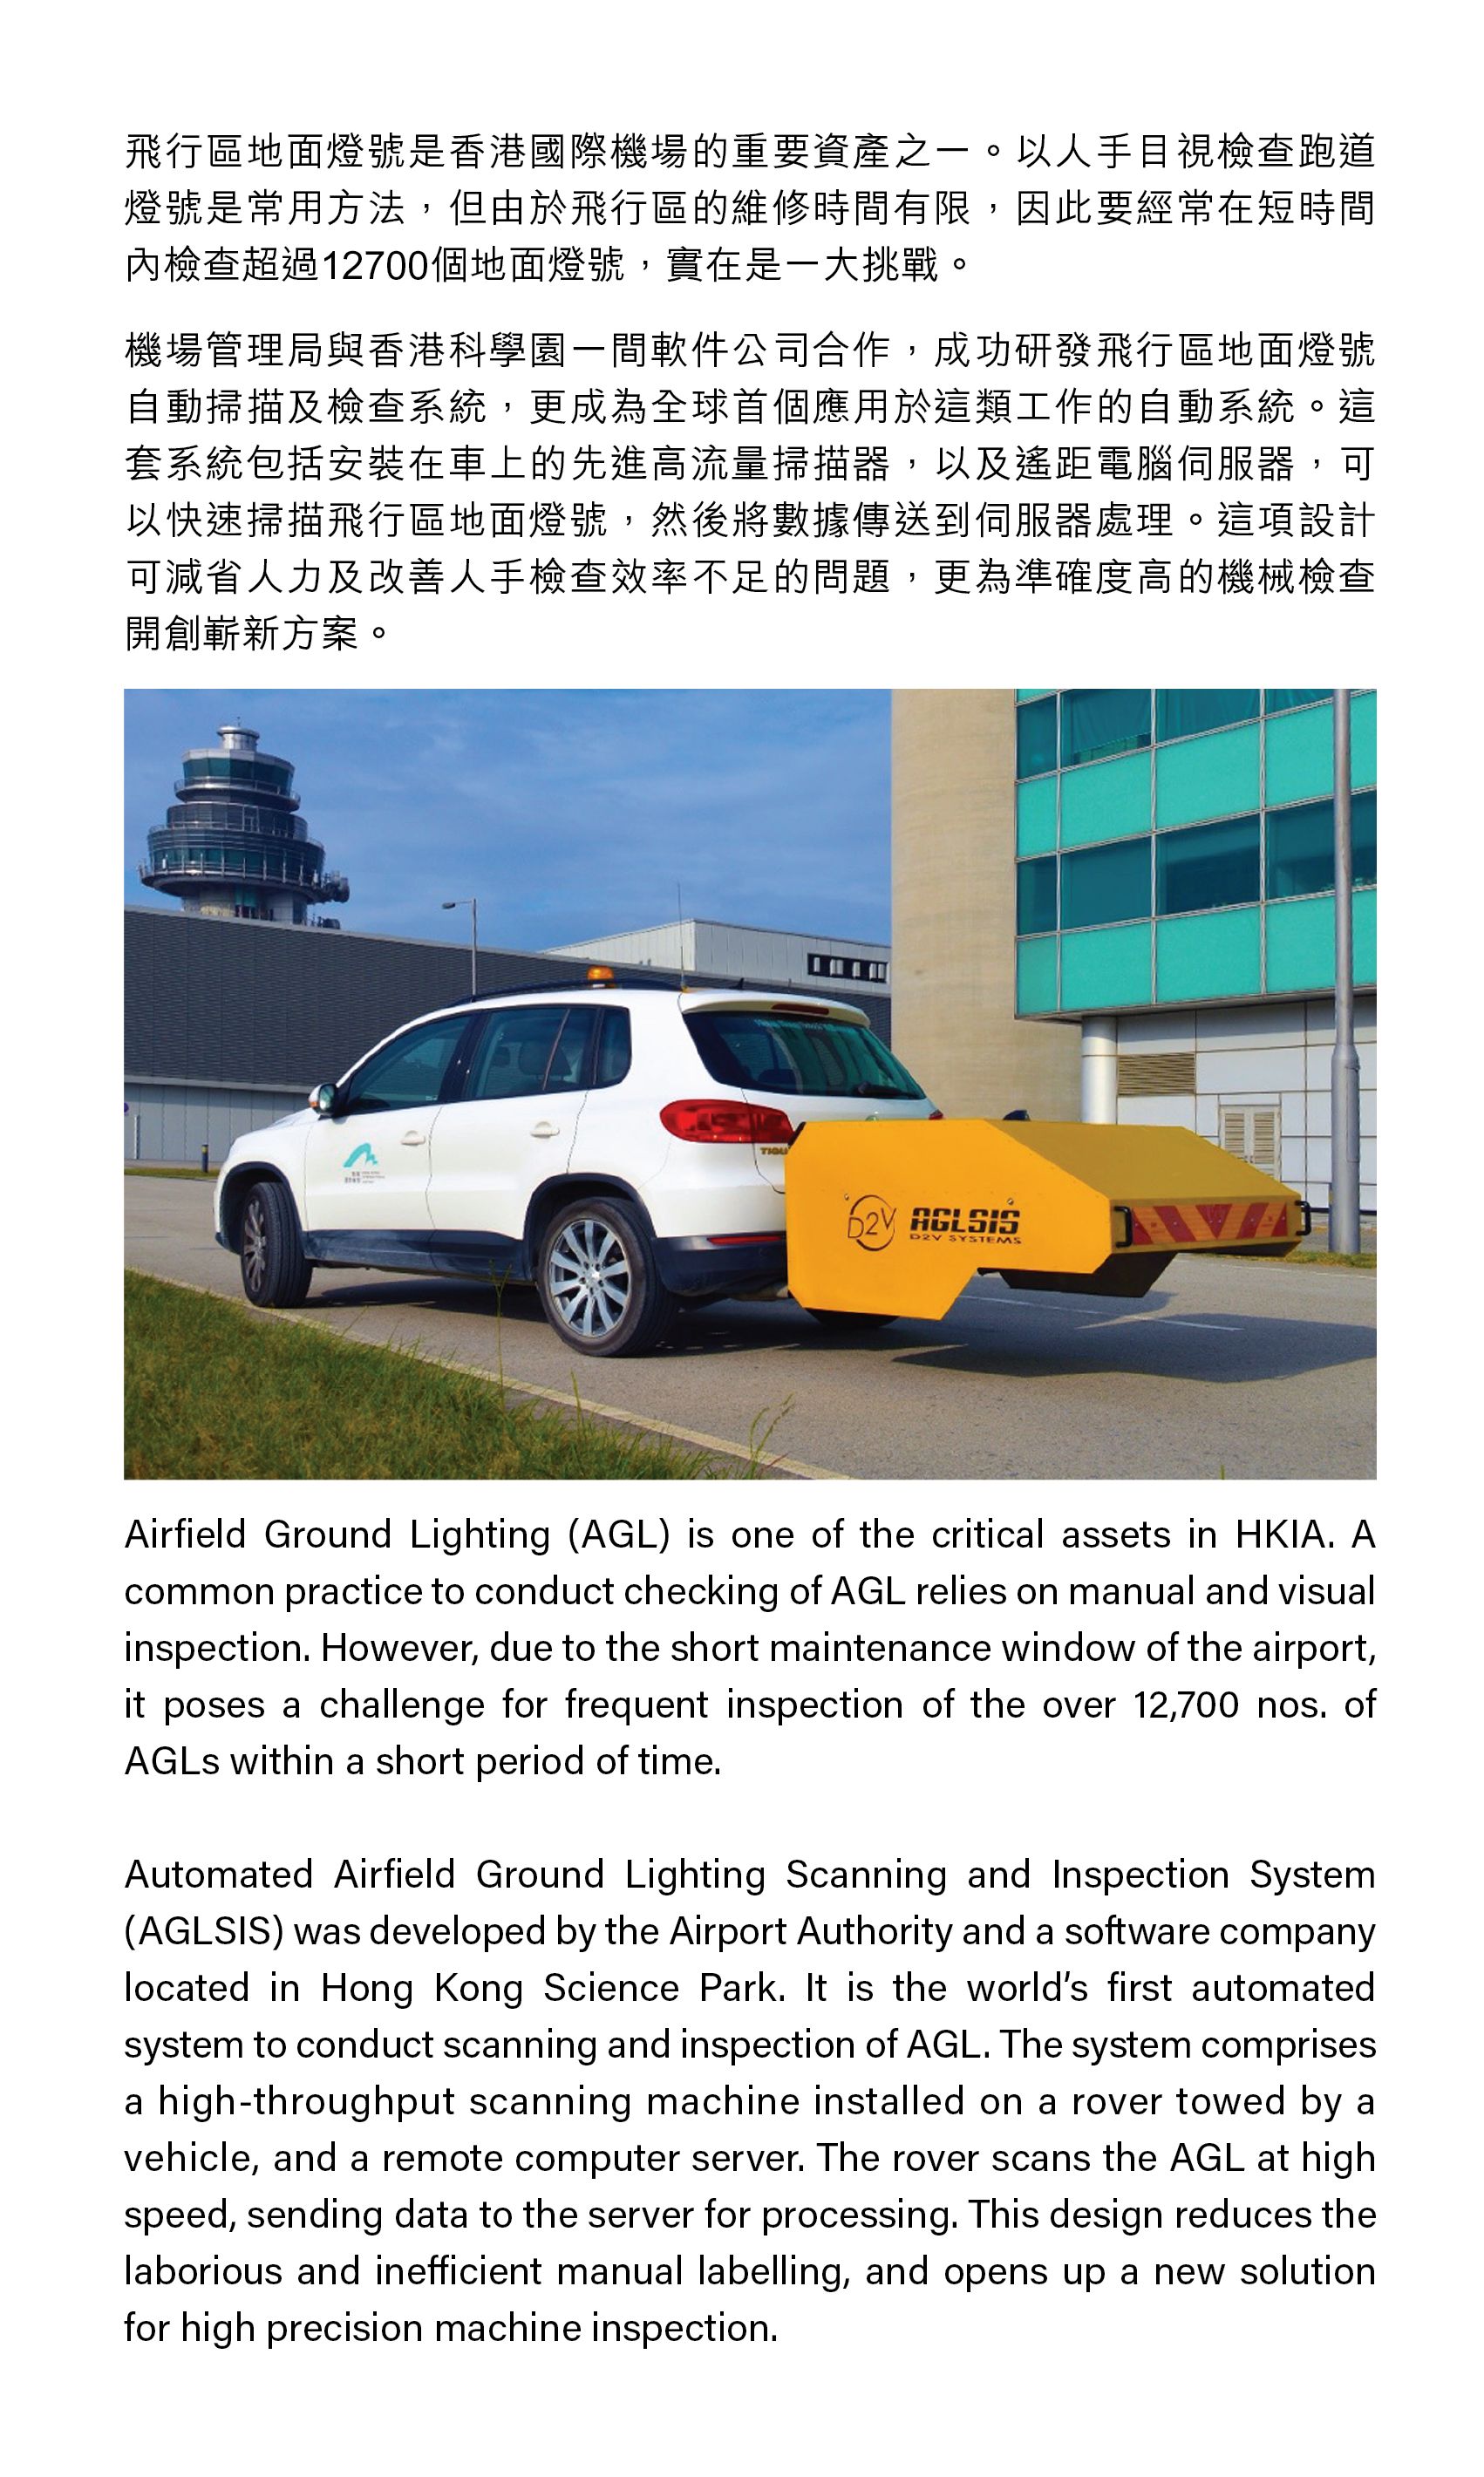 飛行區地面燈號是香港國際機場的重要資產之一。以人手目視檢查跑道燈號是常用方法，但由於飛行區的維修時間有限，因此要經常在短時間內檢查超過12700個地面燈號，實在是一大挑戰。機場管理局與香港科學園一間軟件公司合作，成功研發飛行區地面燈號自動掃描及檢查系統，更成為全球首個應用於這類工作的自動系統。這套系統包括安裝在車上的先進高流量掃描器，以及遙距電腦伺服器，可以快速掃描飛行區地面燈號，然後將數據傳送到伺服器處理。這項設計可減省人力及改善人手檢查效率不足的問題，更為準確度高的機械檢查開創嶄新方案。